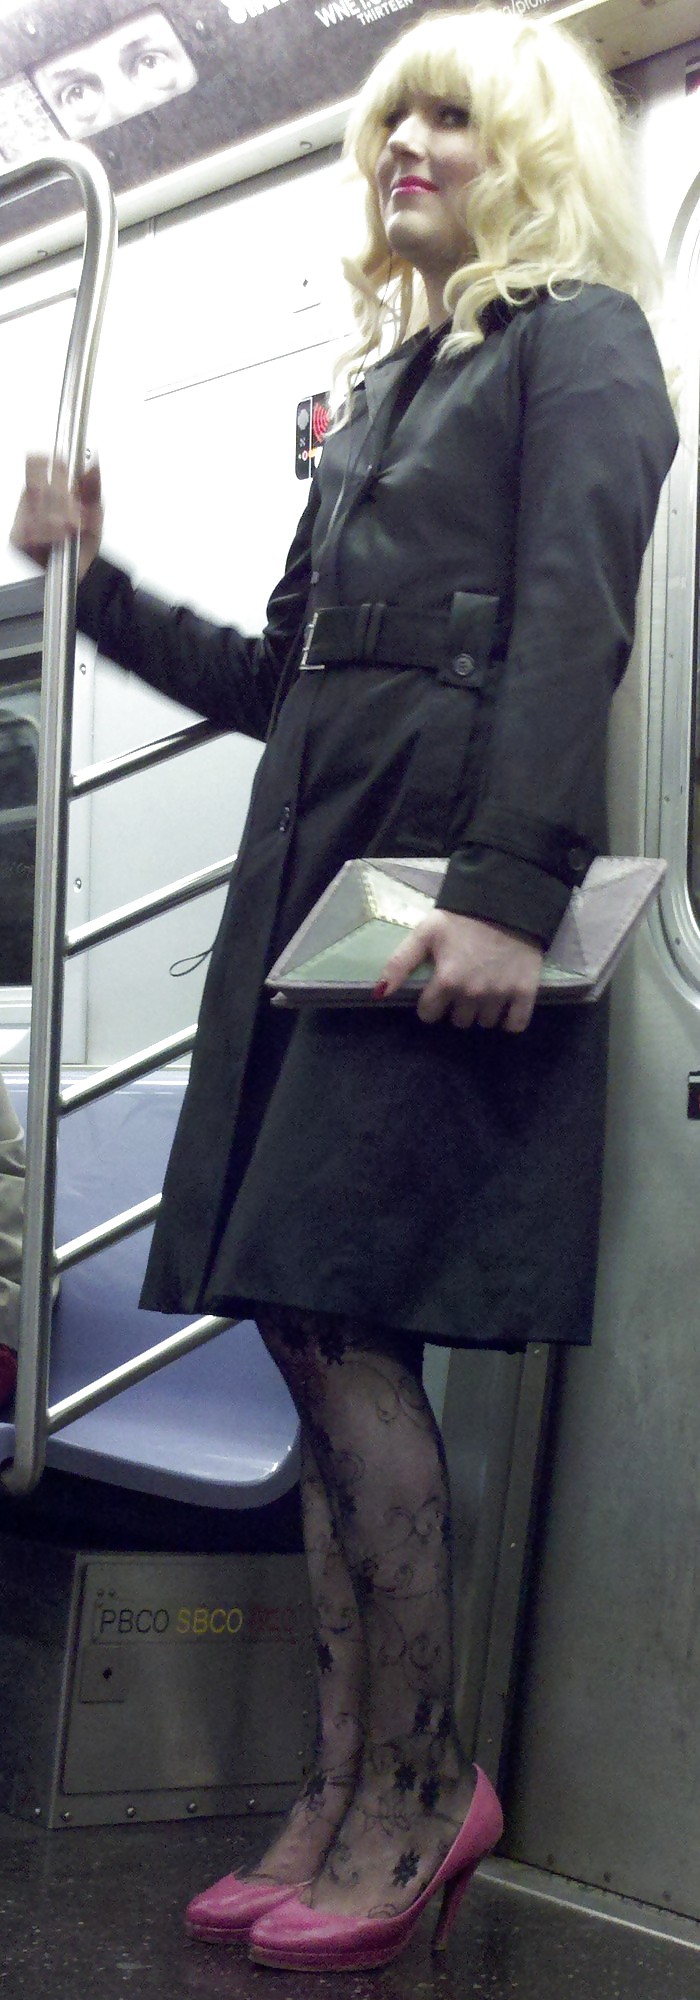 Ragazze della metropolitana di New York 107 il tipo sembra una signora
 #6603938